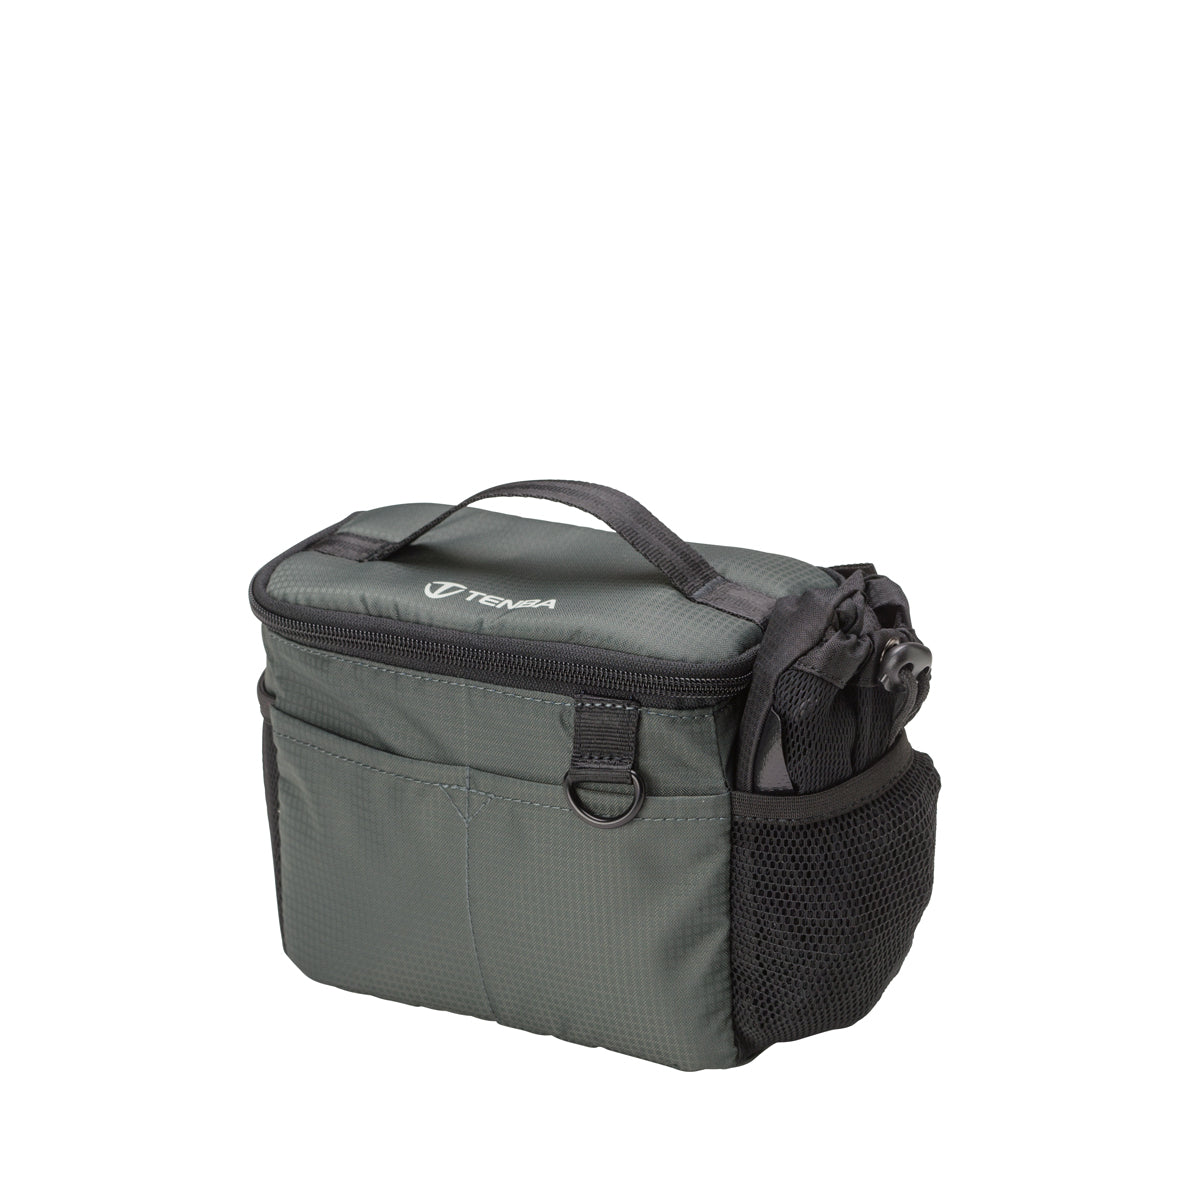 Tenba BYOB/Packlite 7 Flatpack Bundle Bag (Black and Gray)